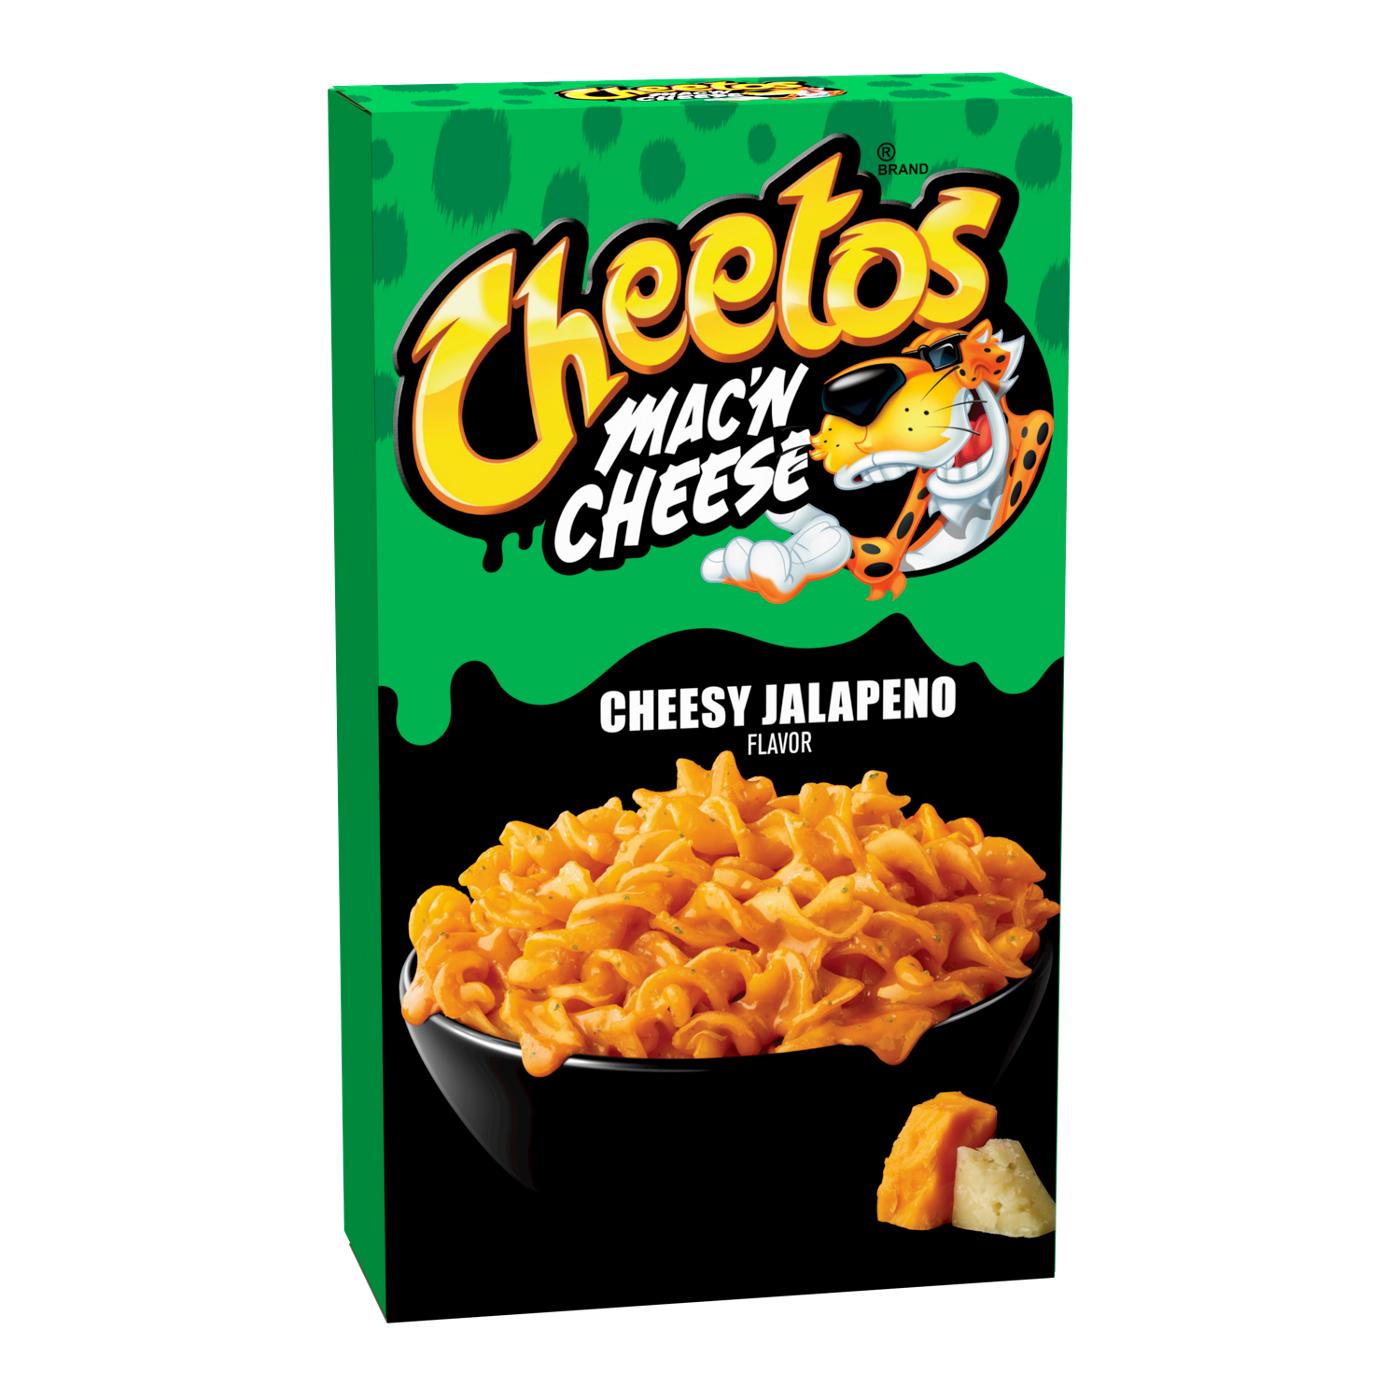 Cheetos Cheesy Jalapeno Mac 'n Cheese; image 1 of 3